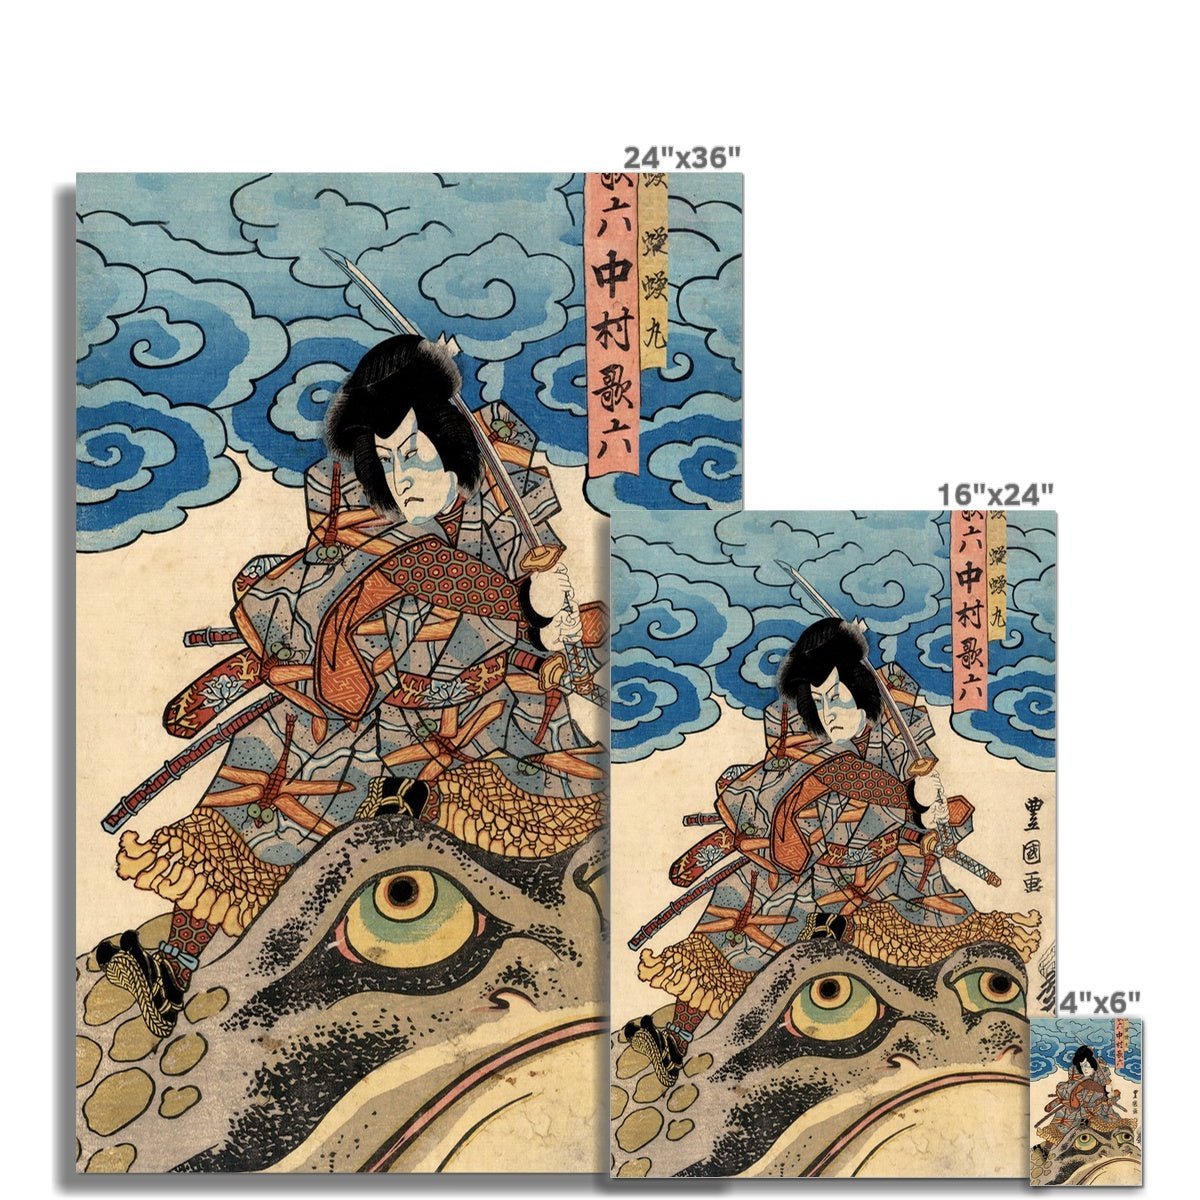 Fine art Jiraiya, The Samurai Warrior, Battles the Sorcerer Orochimaru | Utawgawa Kuniyoshi Toad Art, Fine Art Print